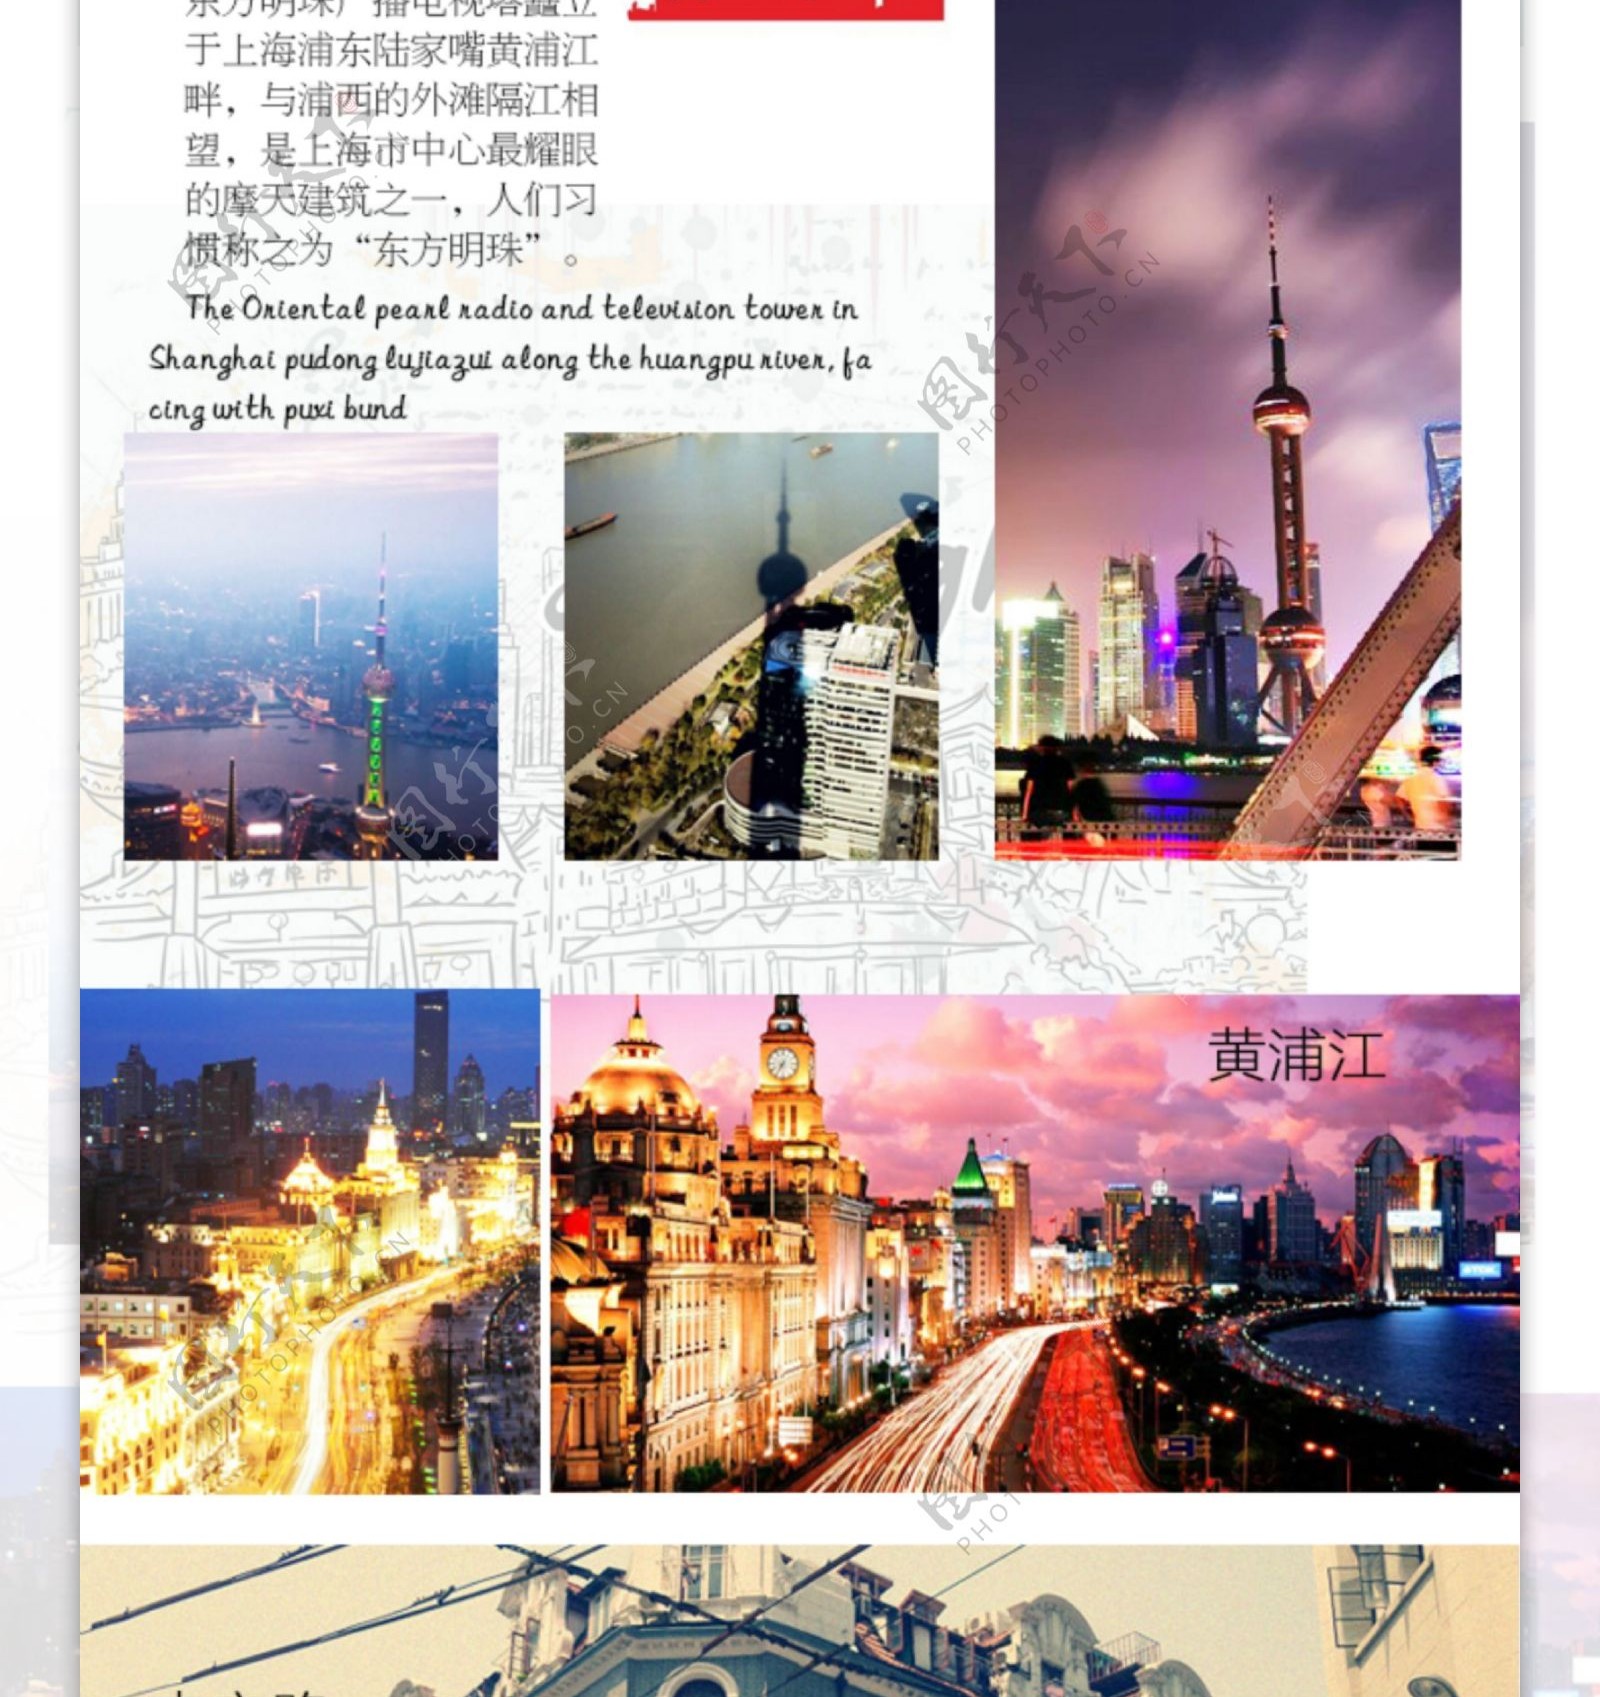 依据上海资料图片排版